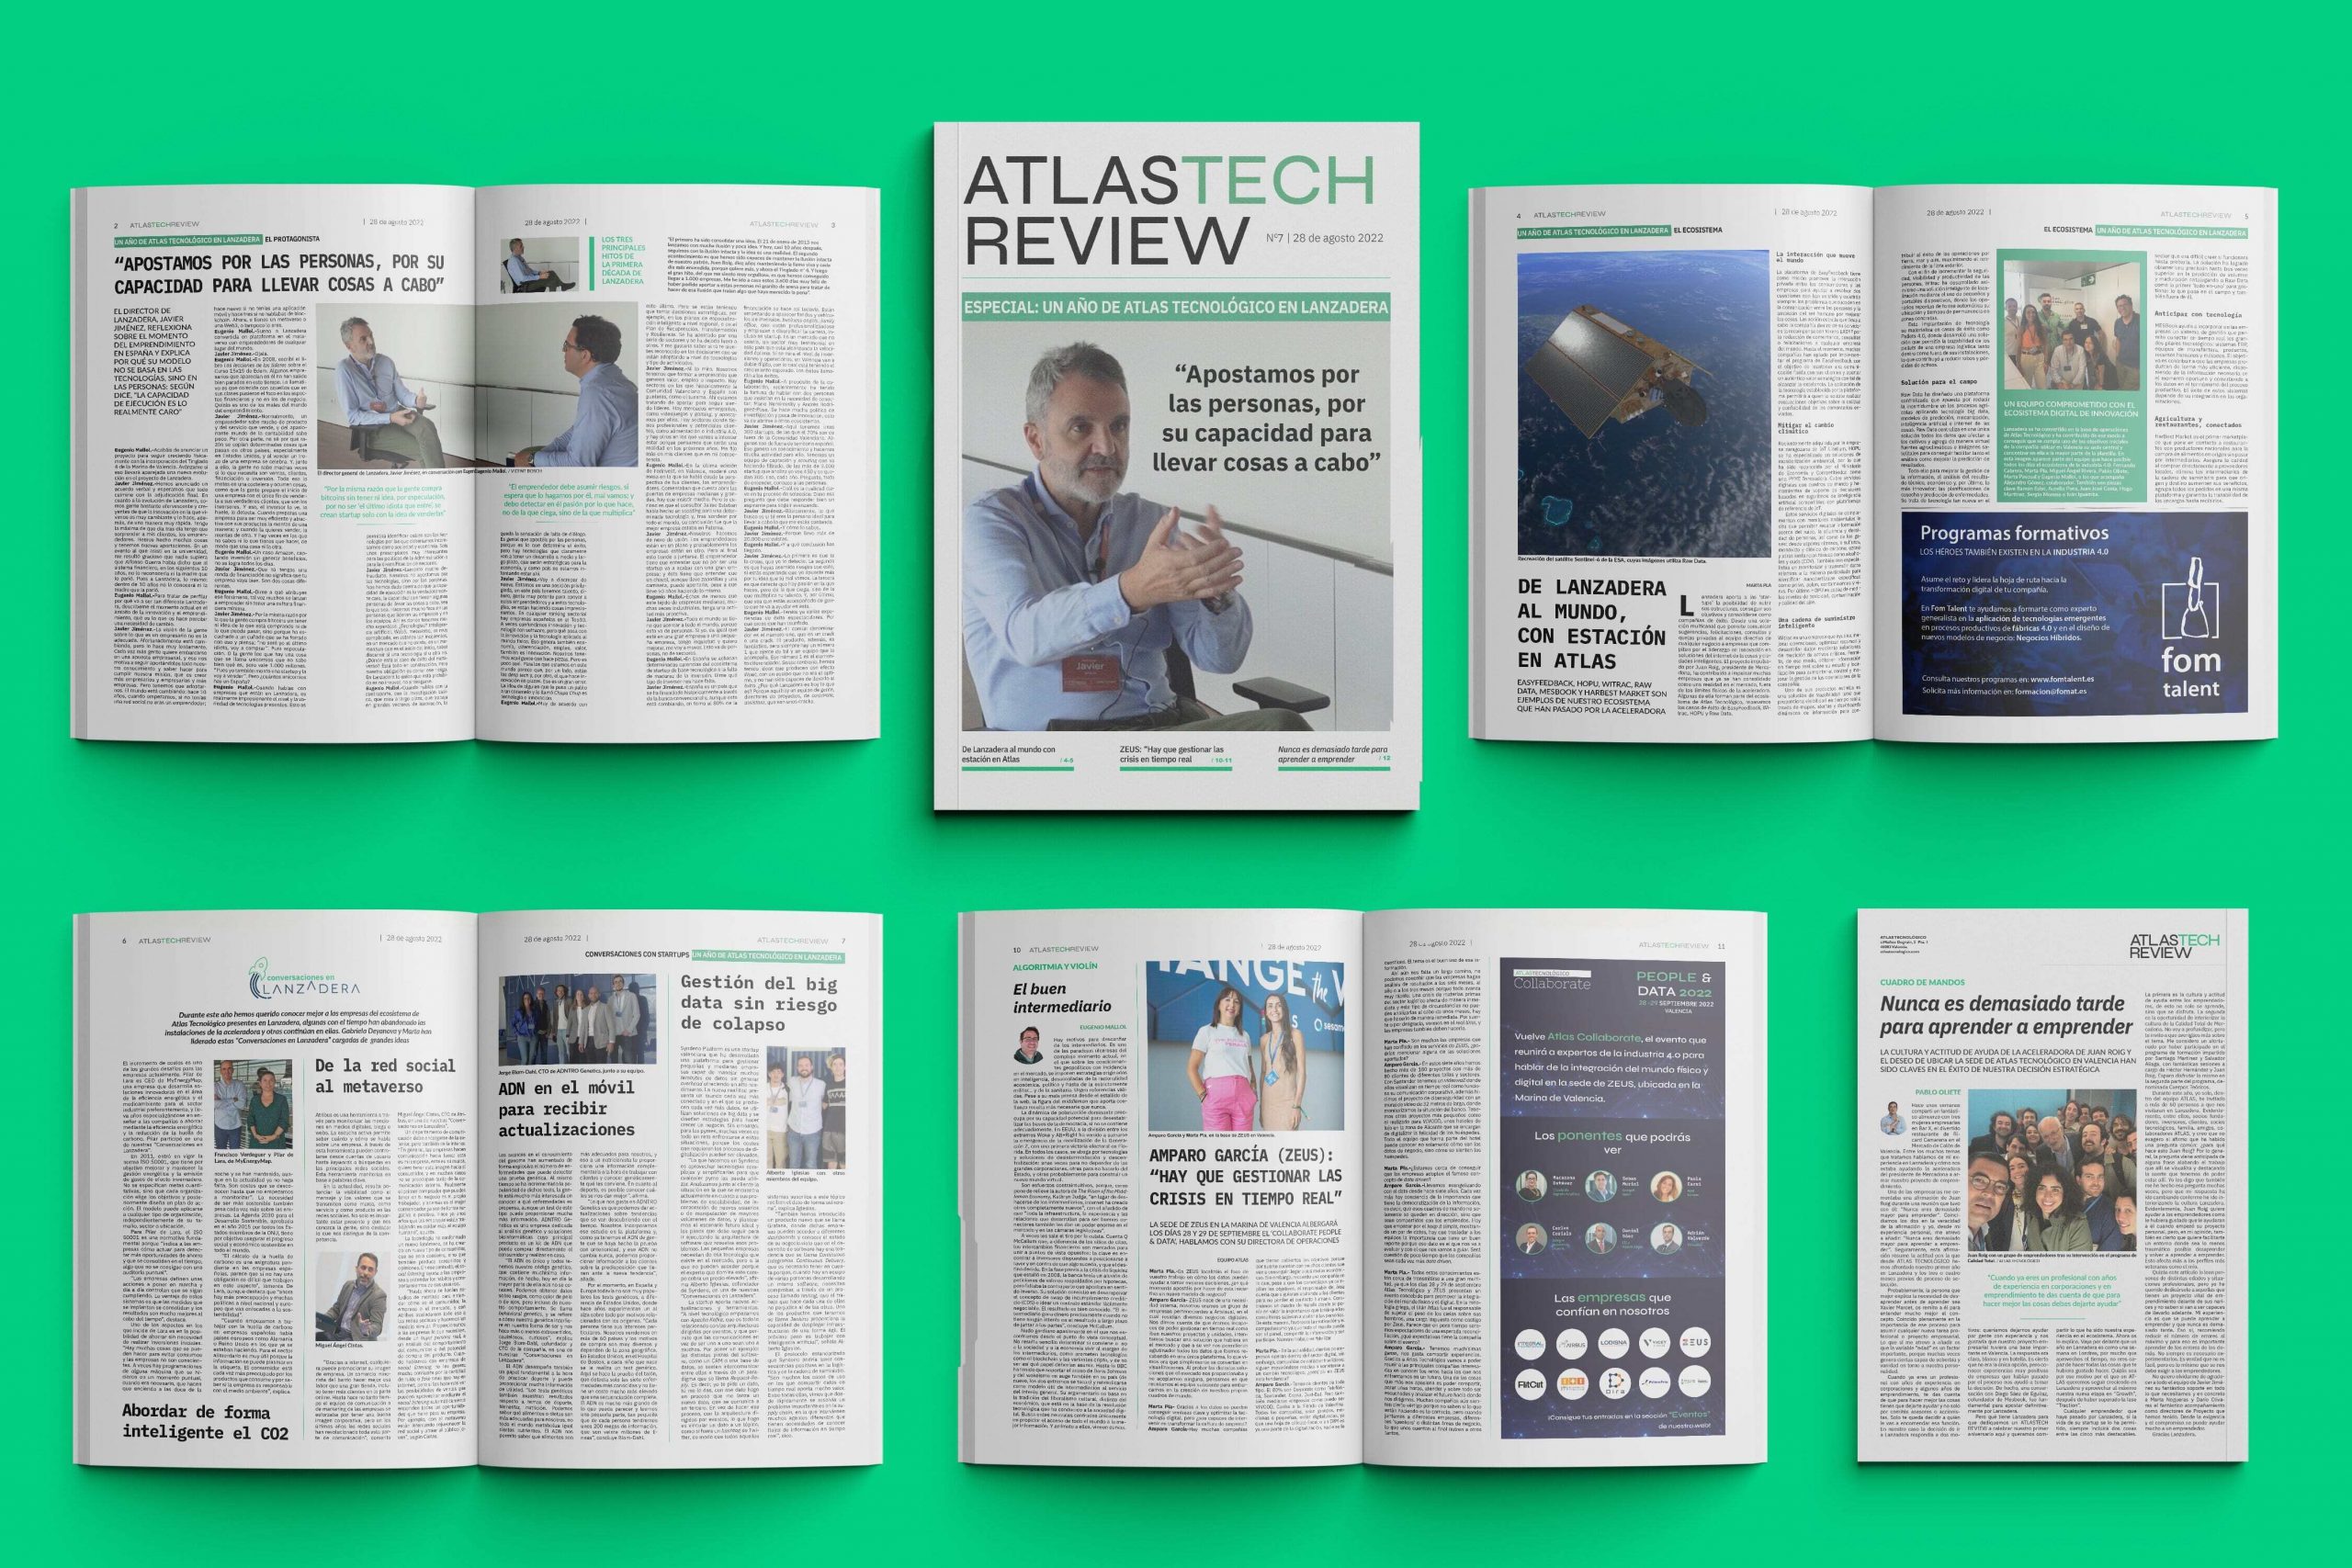 ATLASTECH REVIEW repasa el primer año de Atlas Tecnológico en Lanzadera y entrevista a su director general